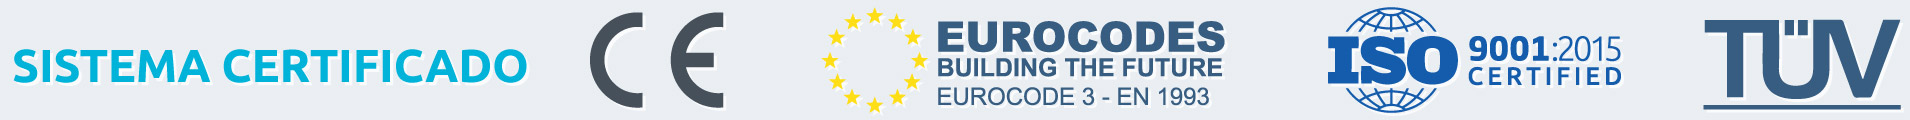 sistema de construccion certificado CE, ISO-9001-2015, TÜV, EUROCODE 3 - EN 1993